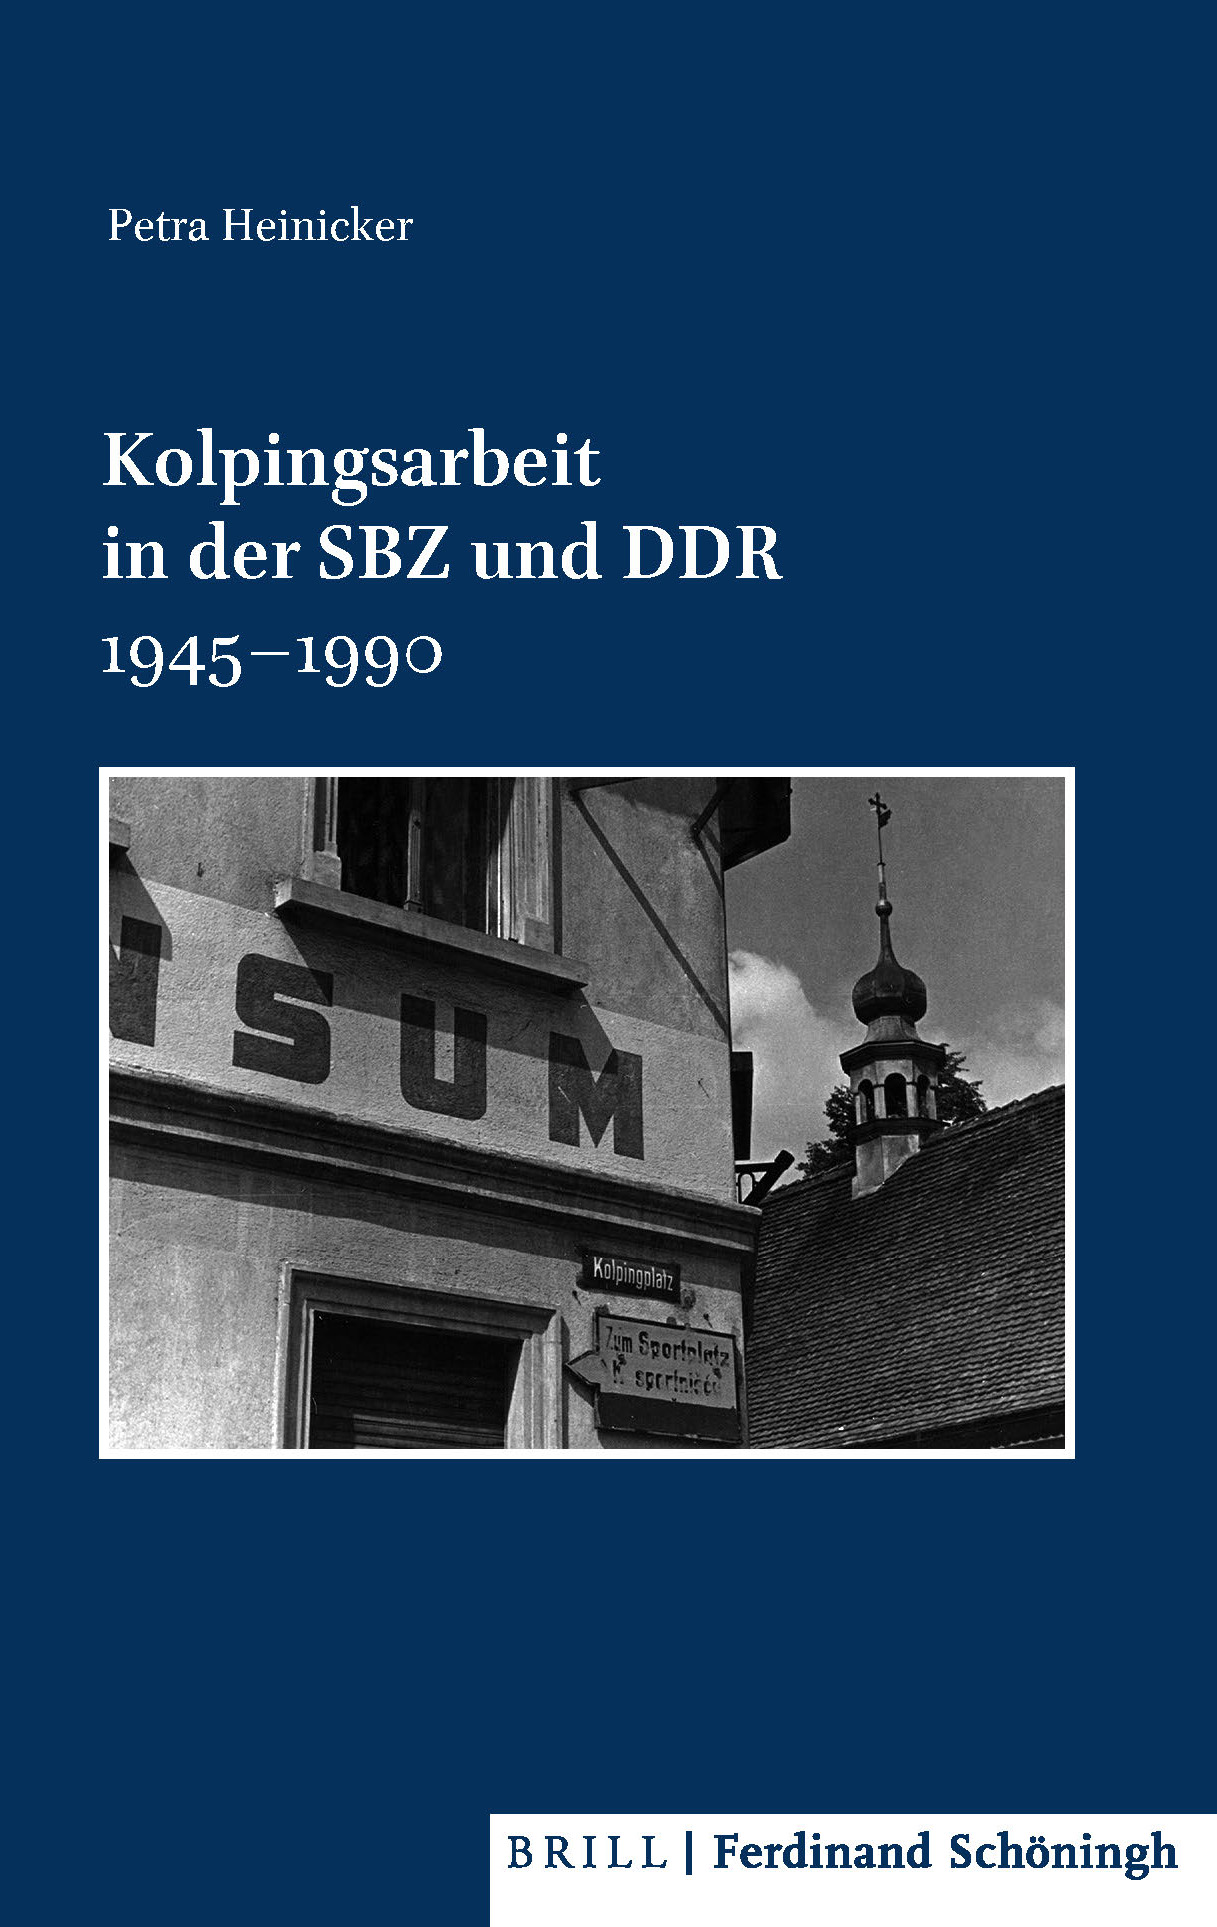 Petra Heinicker: Kolpingsarbeit in der SBZ und DDR 1945–1990.